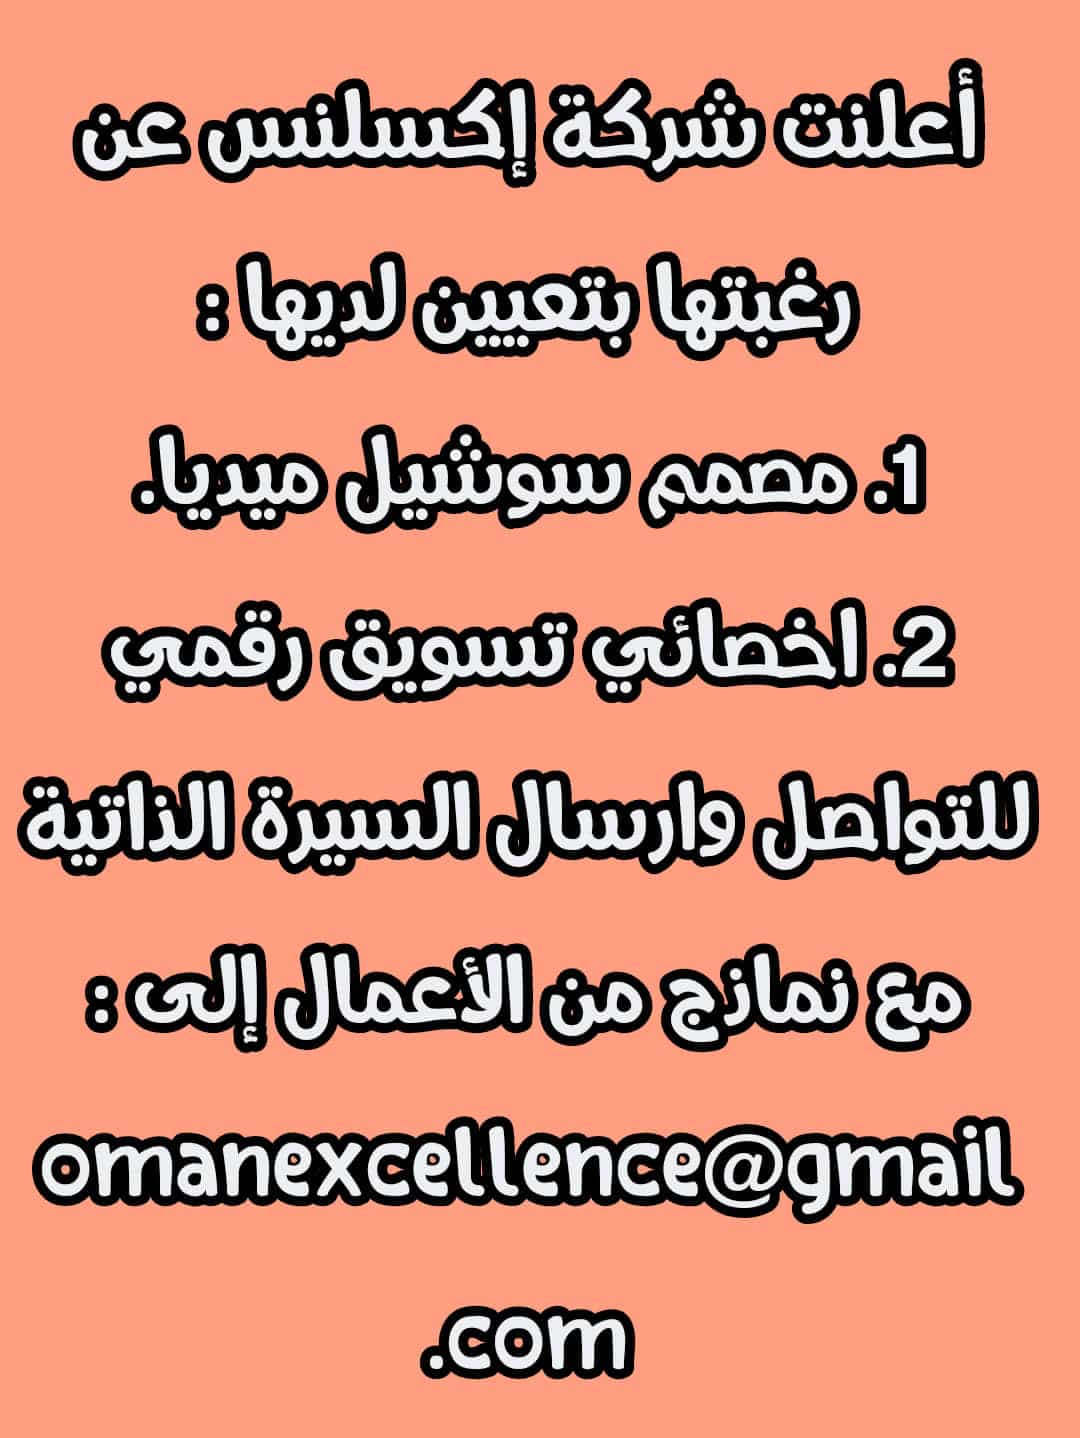 وظائف شاغرة في سلطنة عمان اليوم 4-10-2022 لجميع الجنسيات